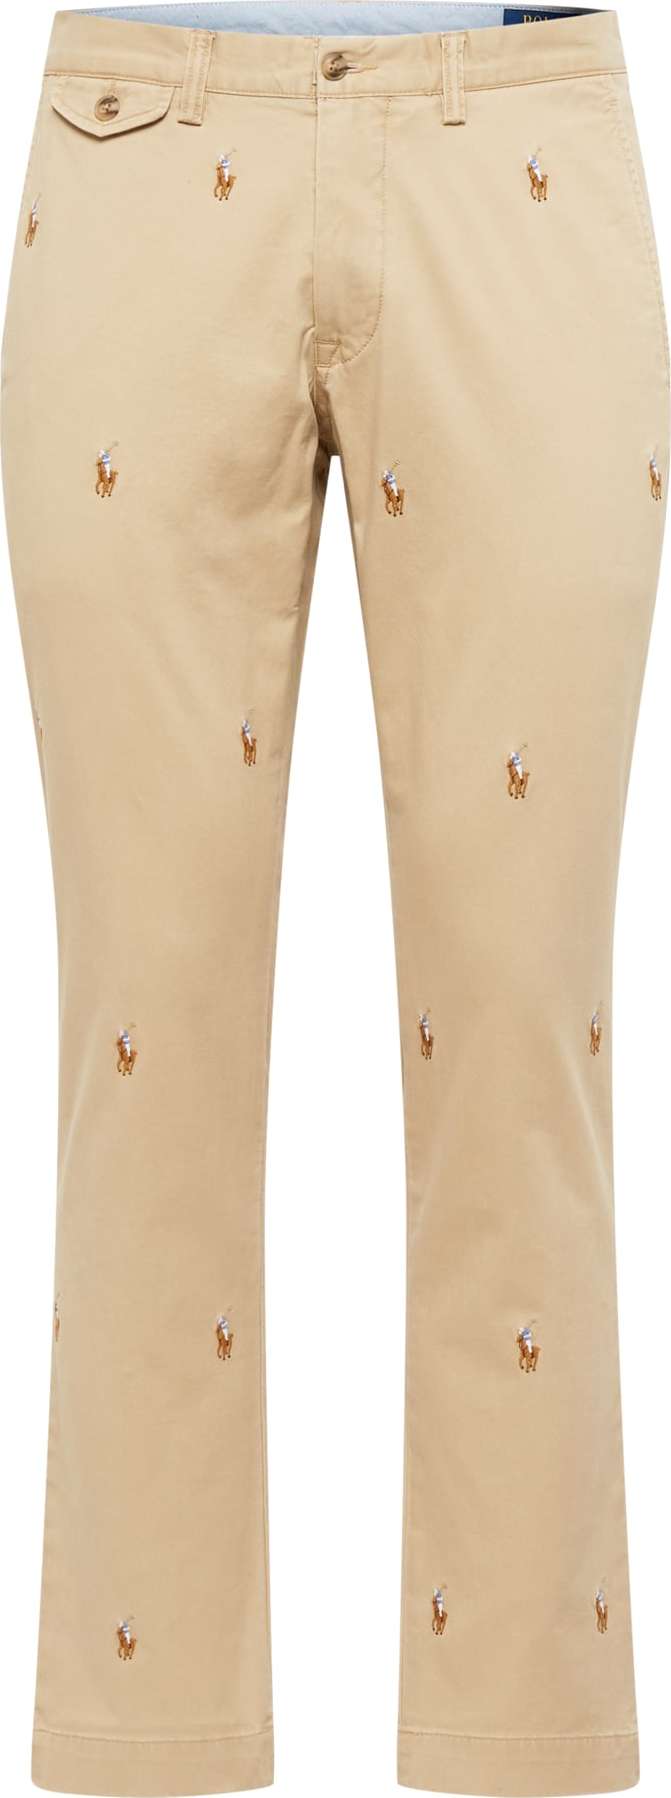 Chino kalhoty 'BEDFORD' Polo Ralph Lauren světlemodrá / hnědá / světle hnědá / bílá